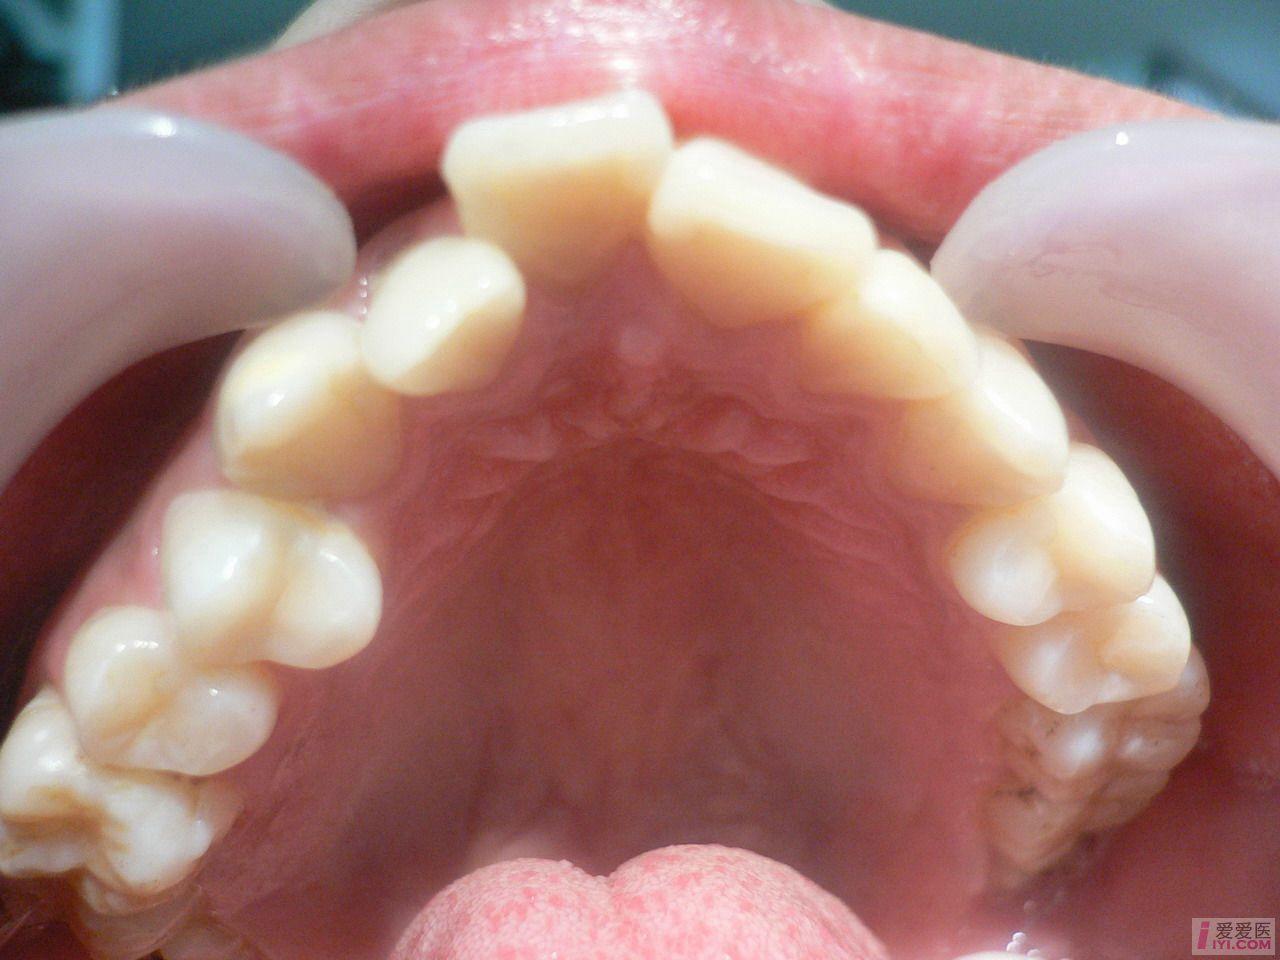 牙齿畸形种类图片图片